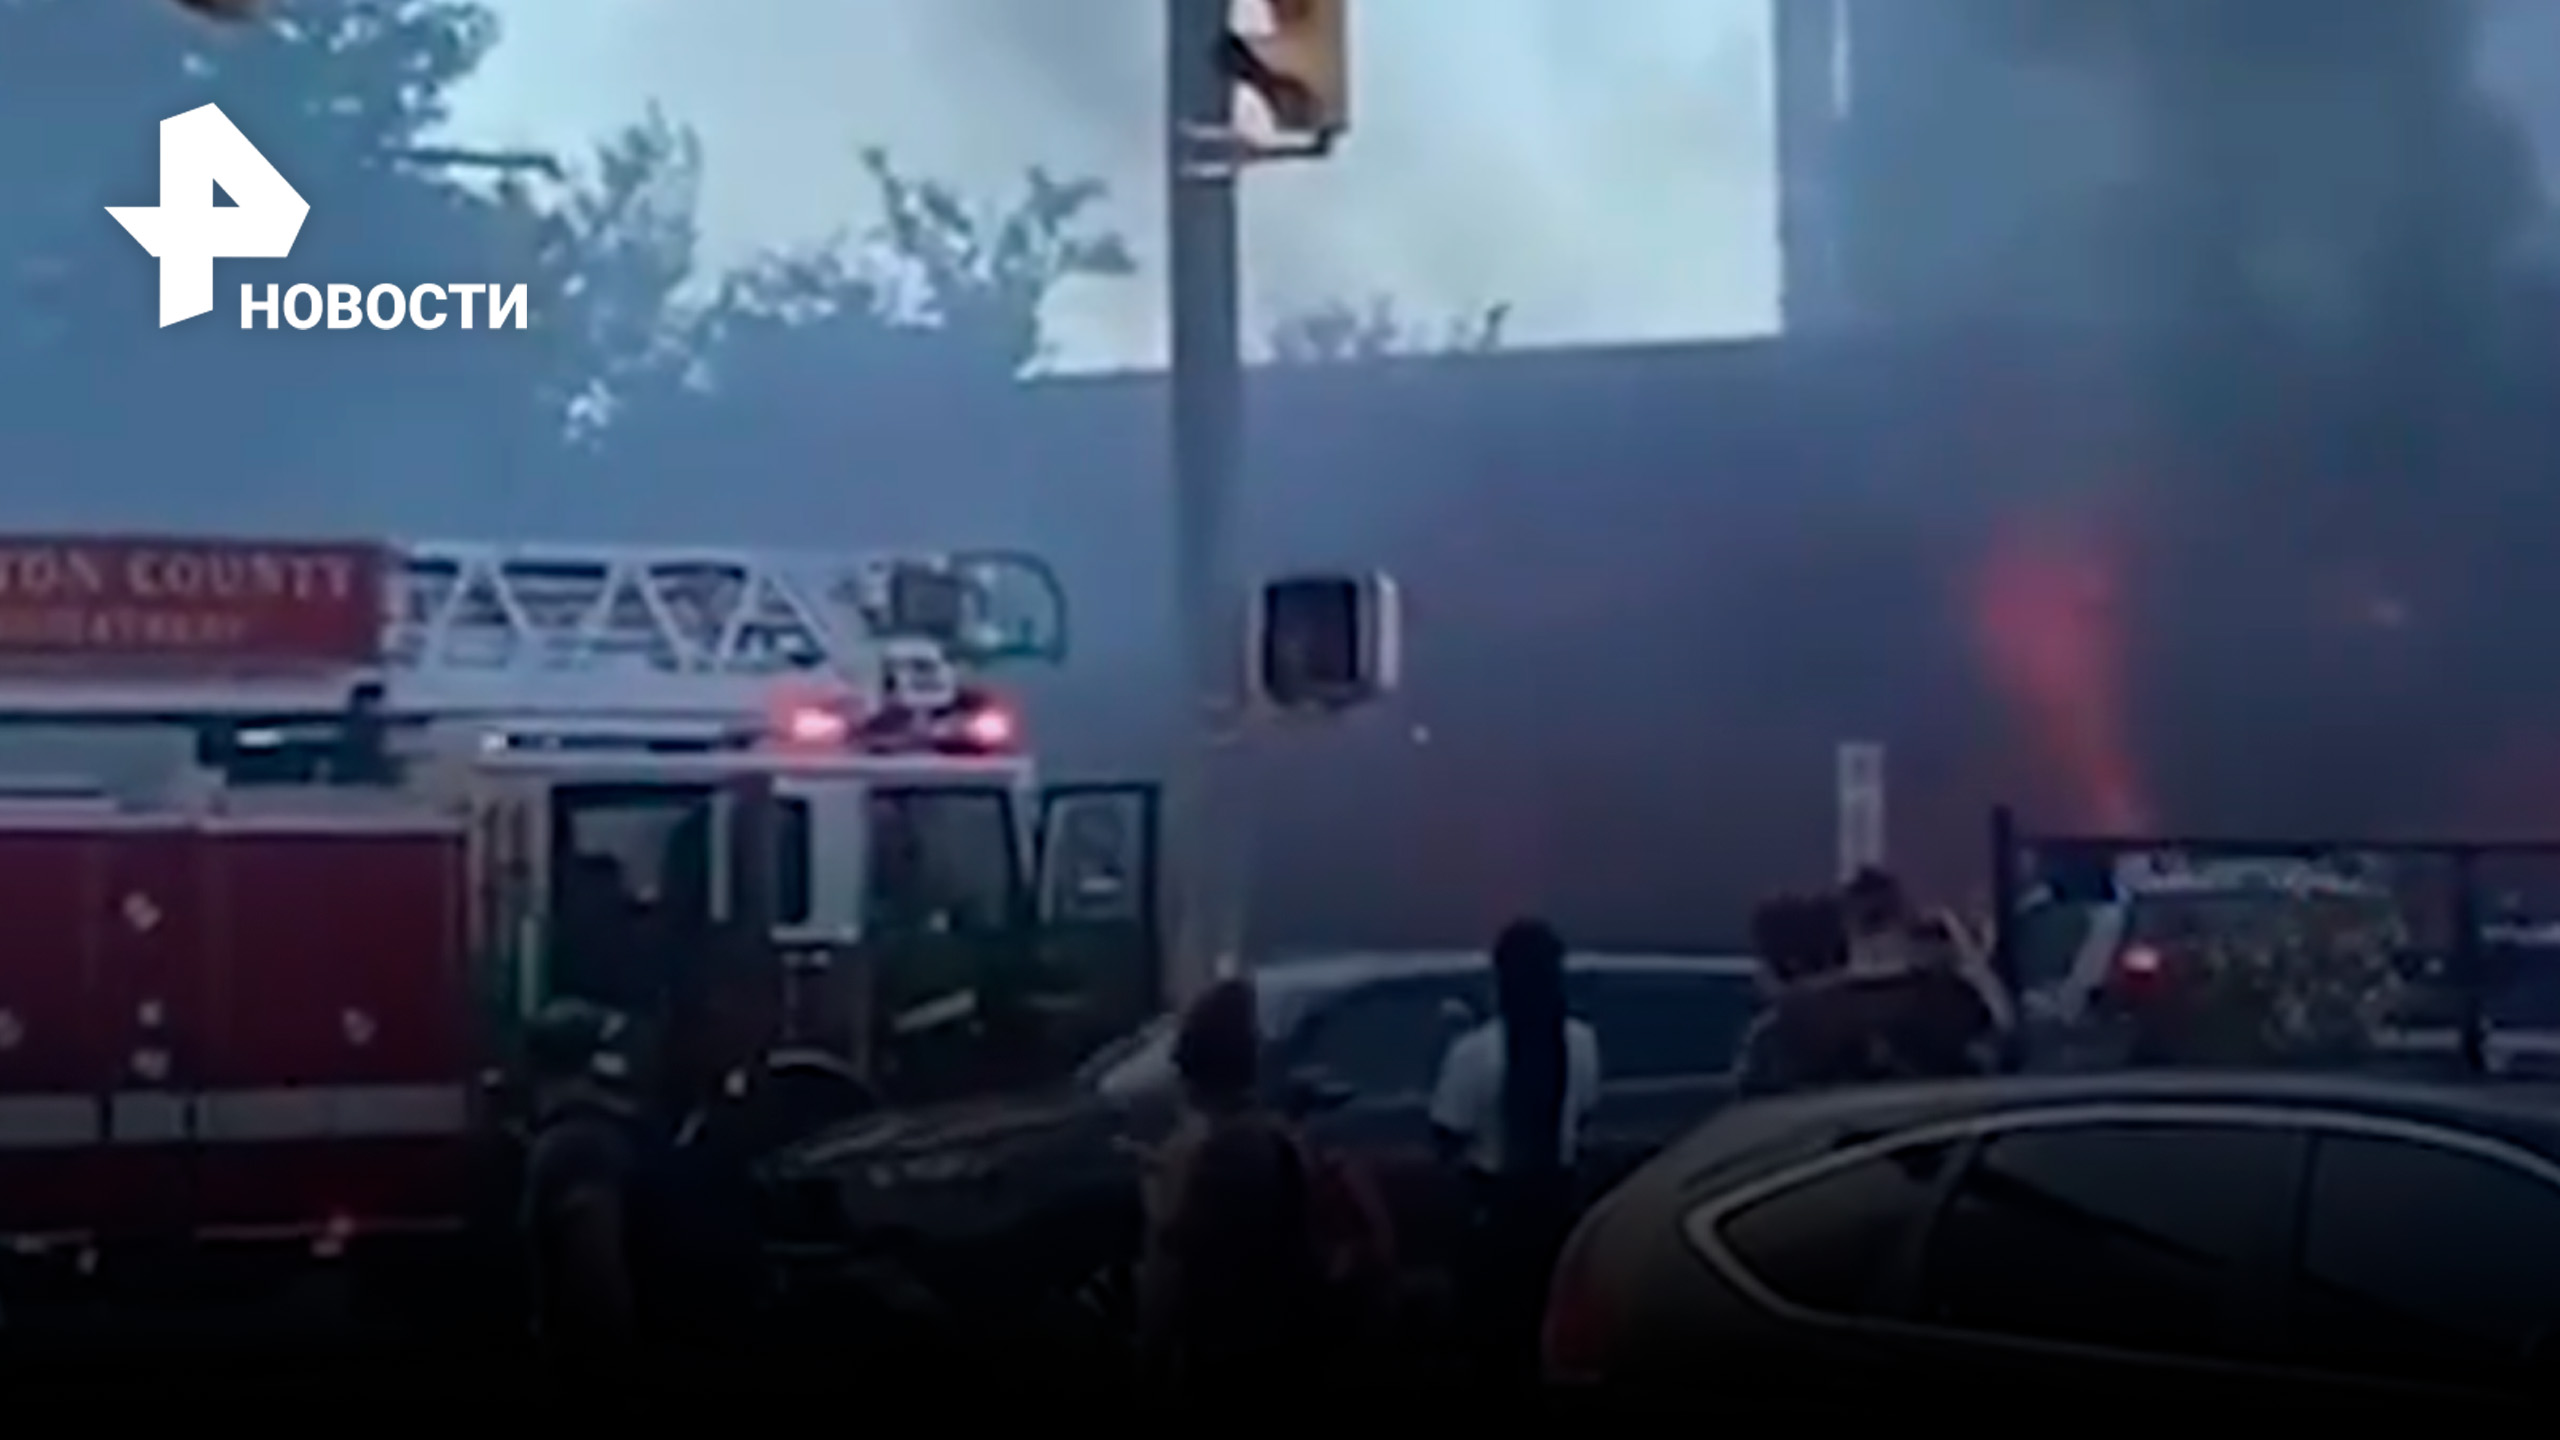 Автомобиль протаранил ресторан: люди заблокированы в горящем здании в США / РЕН Новости